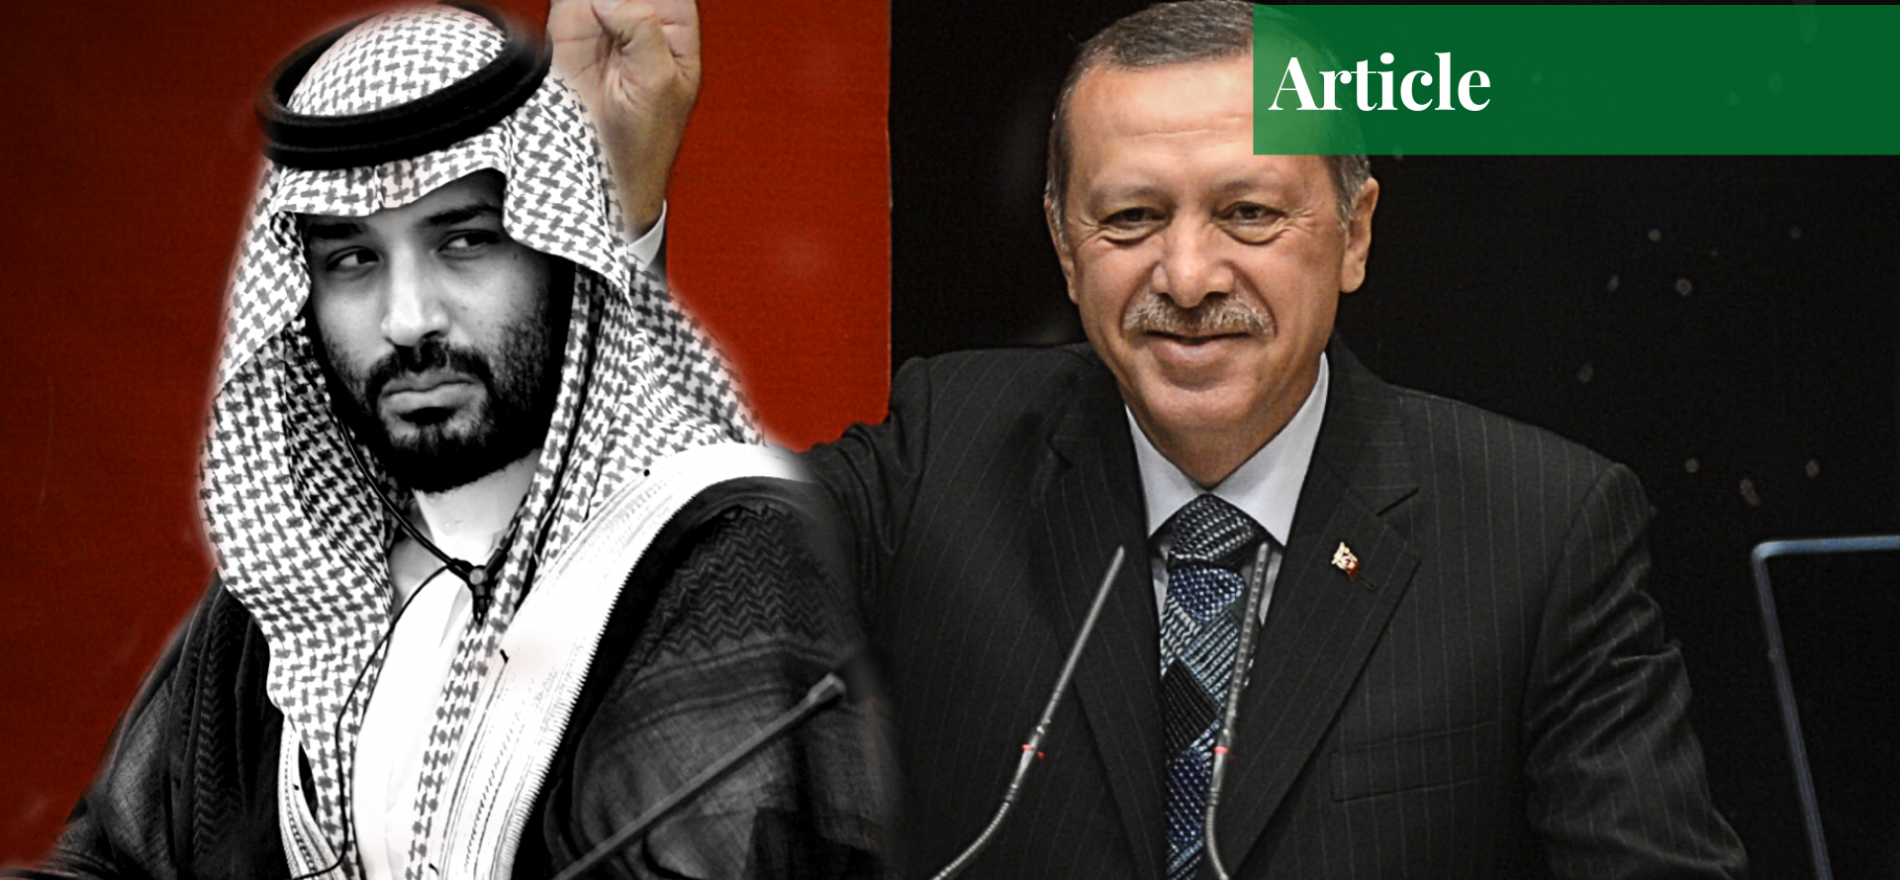 Saudi Arabia and Turkey